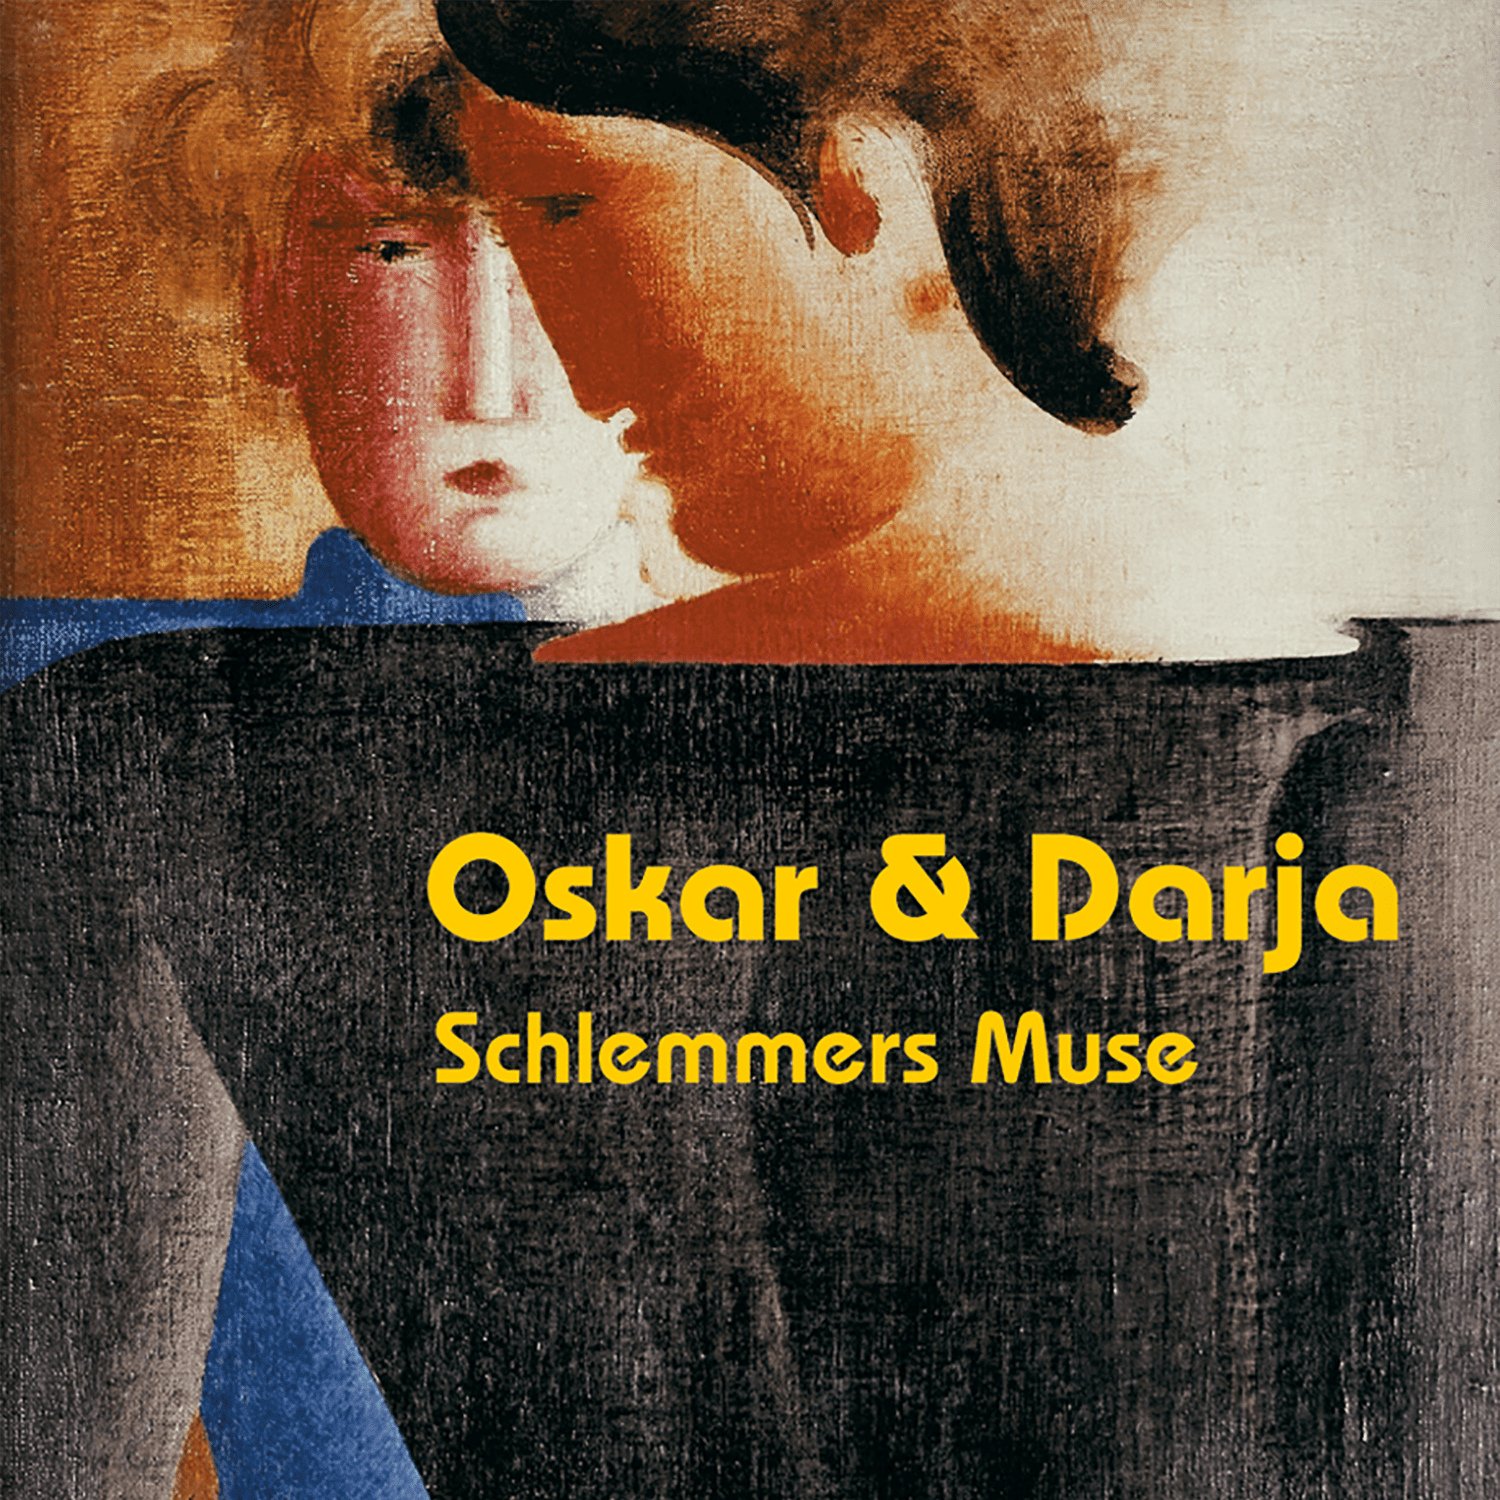 Oskar & Darja - Schlemmers Muse的图片
